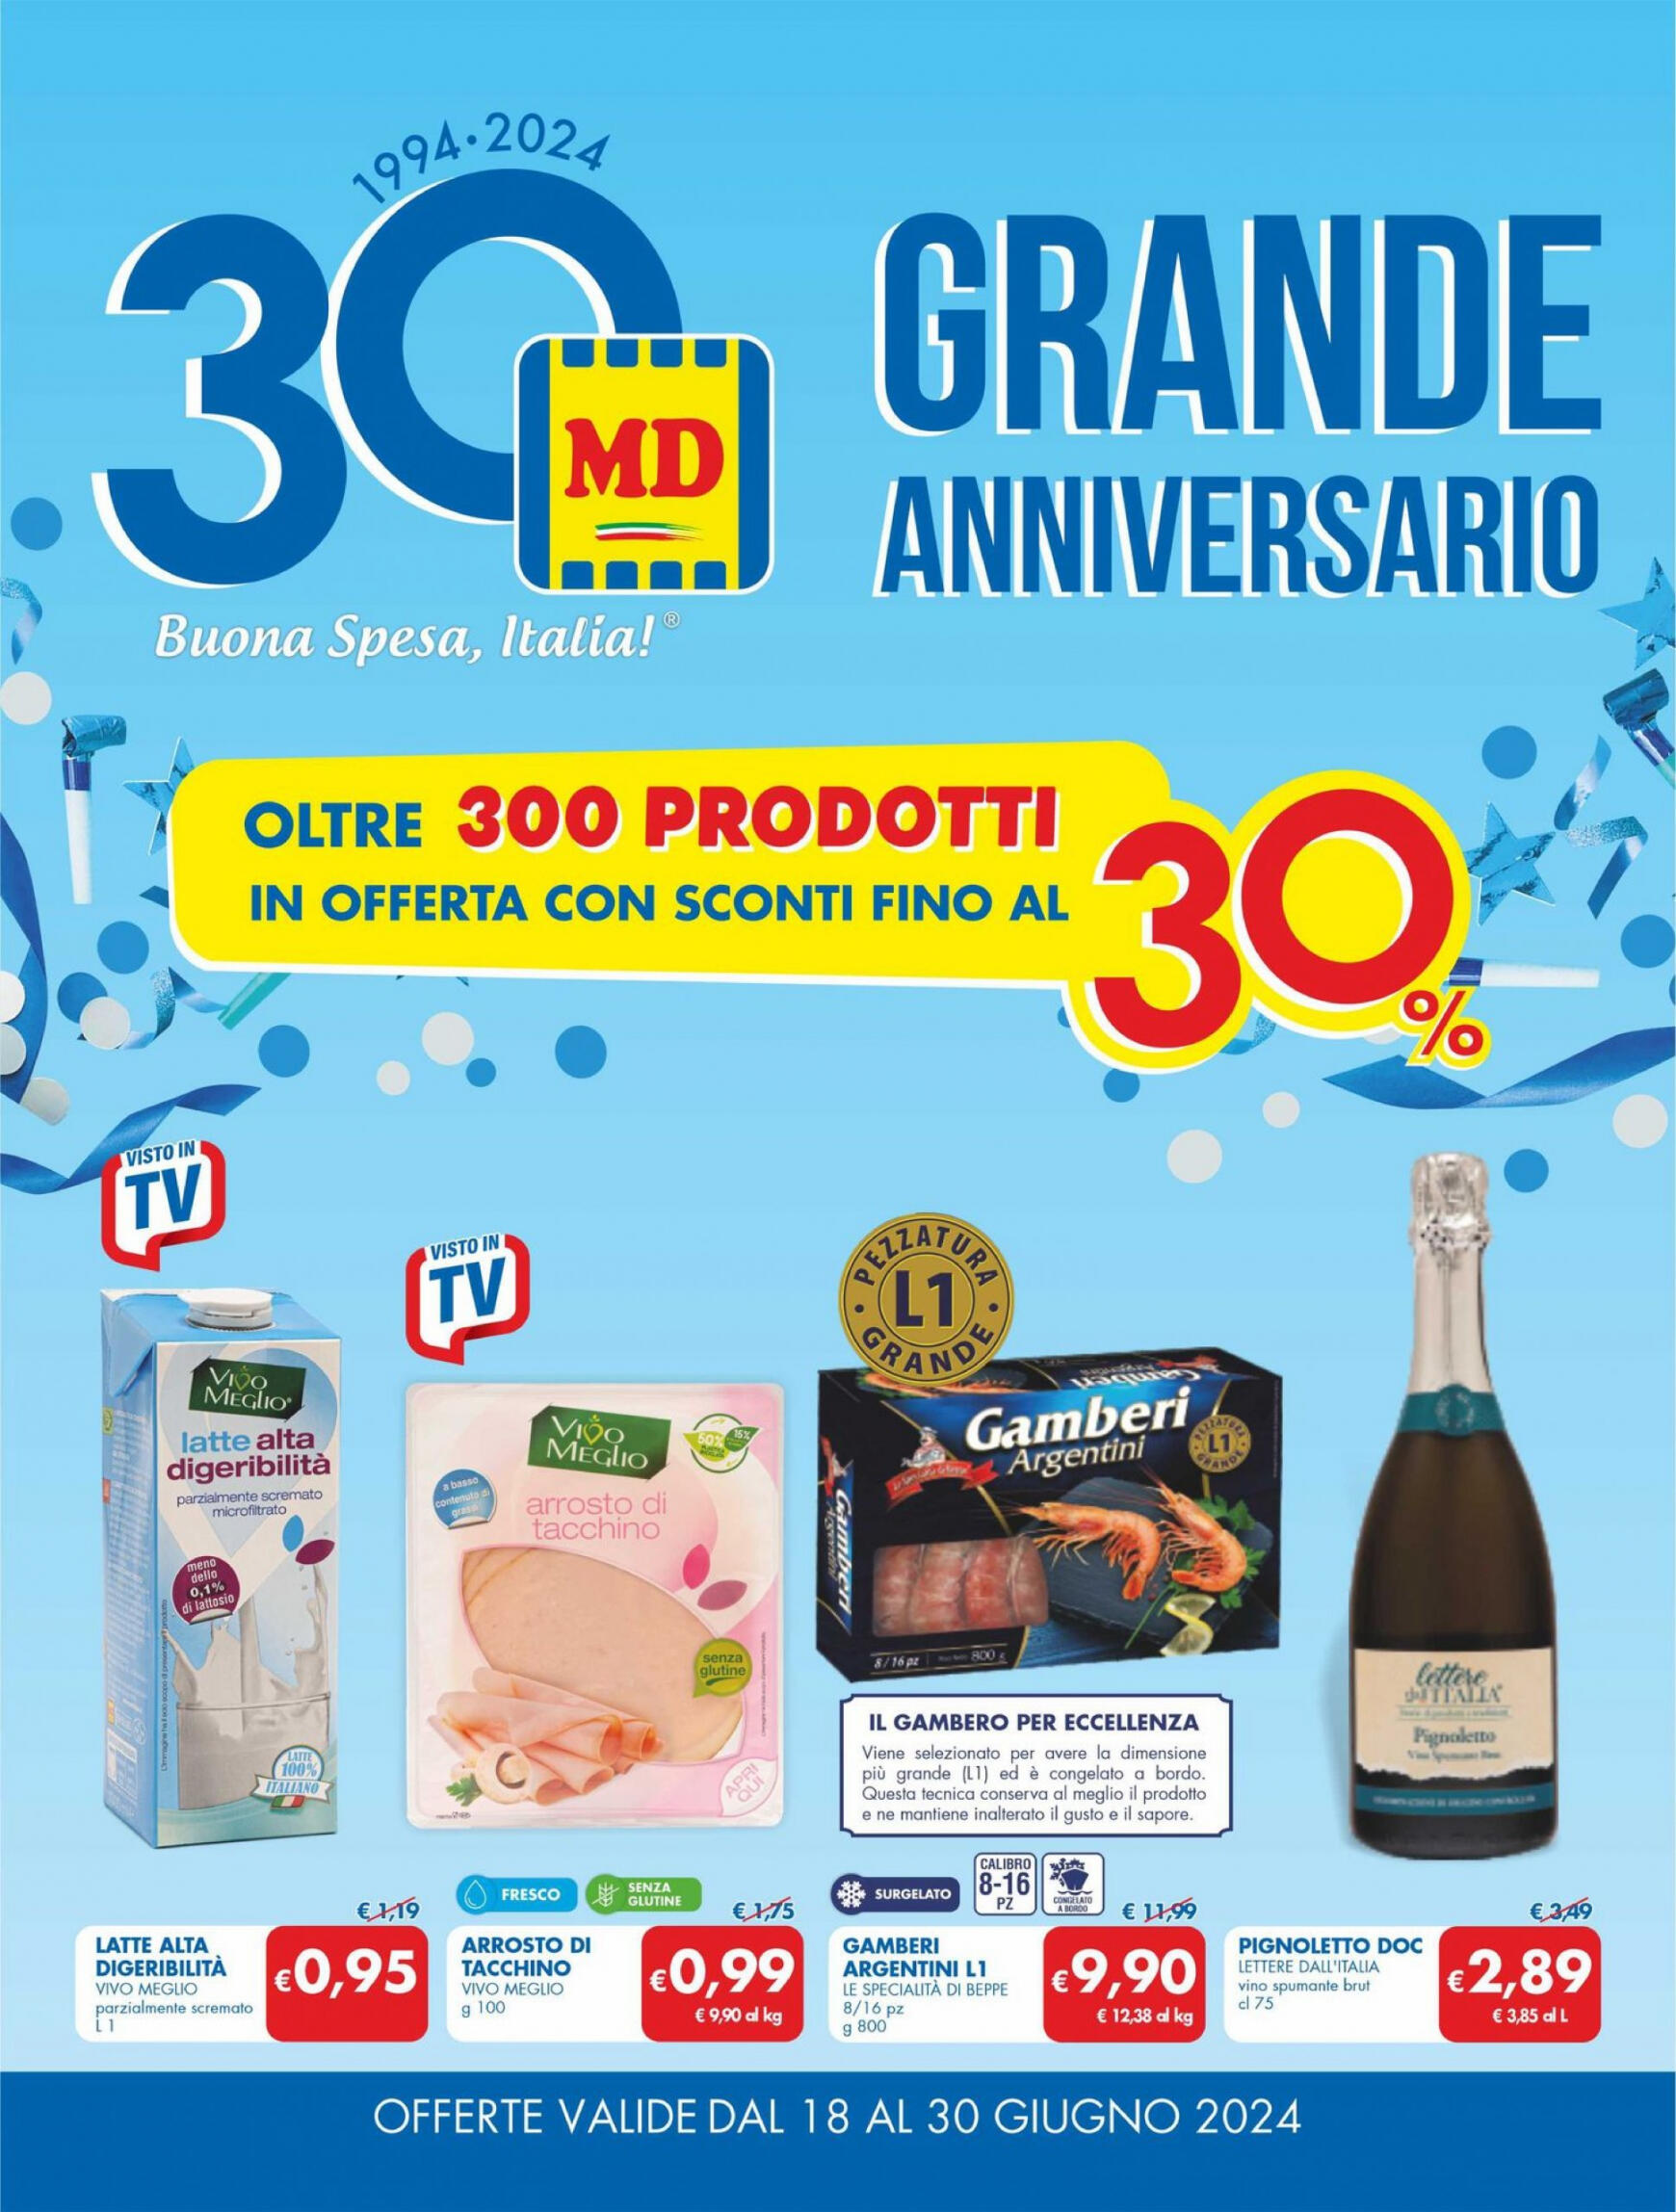 md-discount - Nuovo volantino MD 18.06. - 30.06.